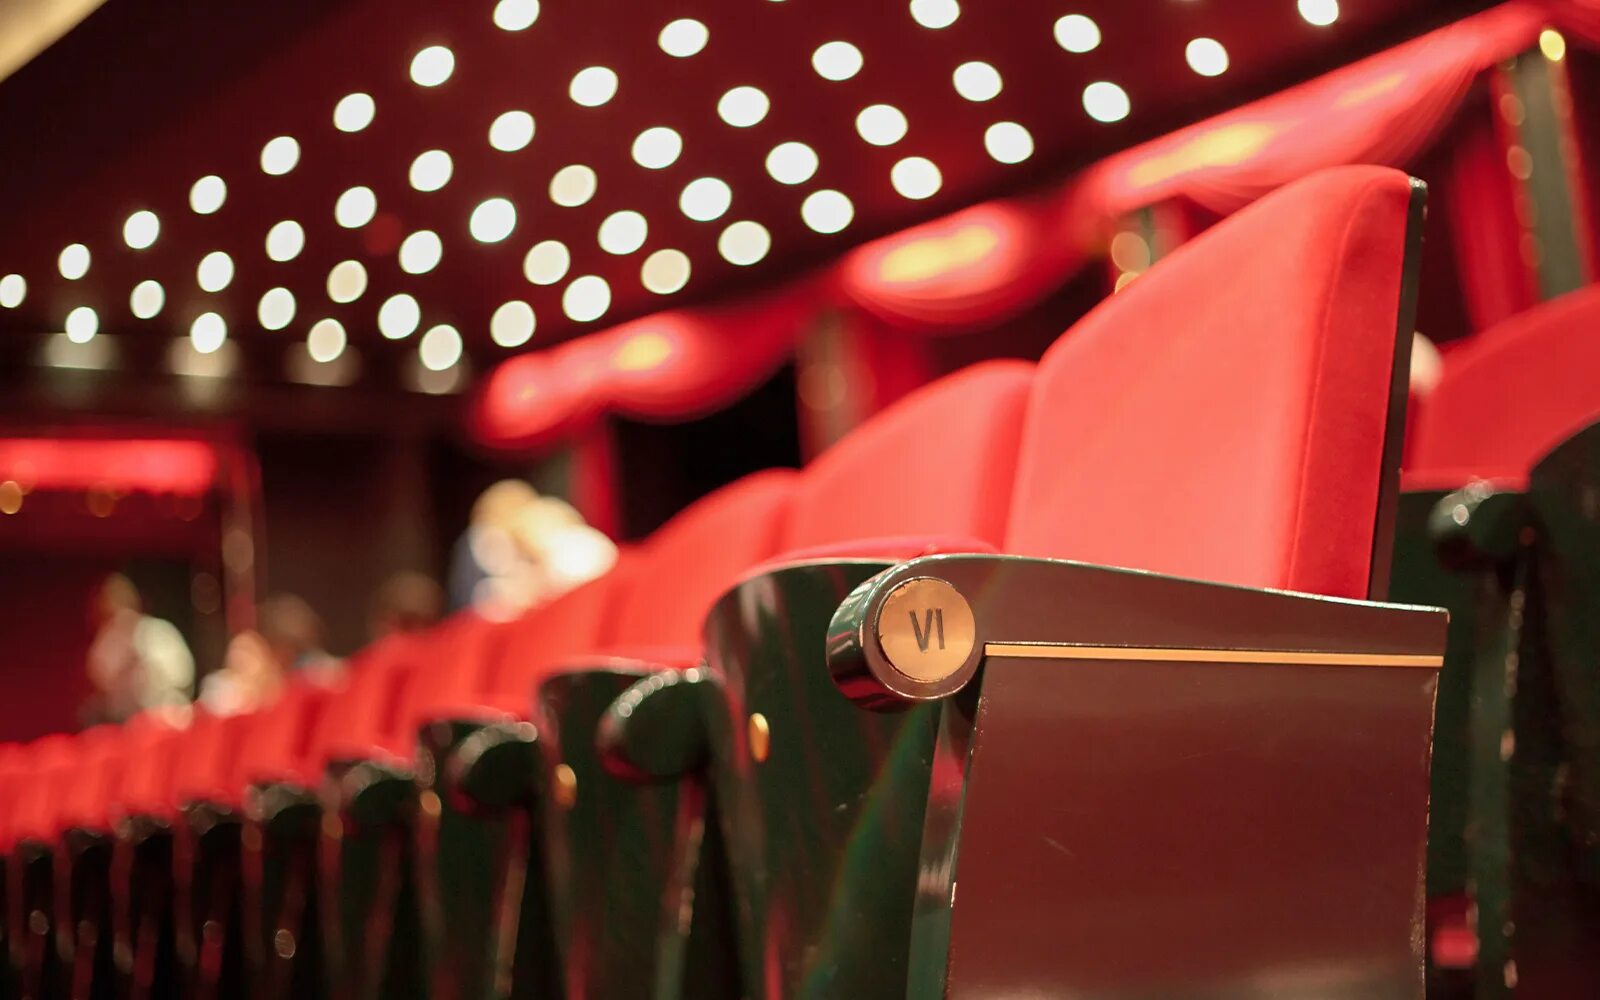 Theatre seats. Сиденья в театре. Кресло в кинотеатре сверху. Ряды сидений в театре.